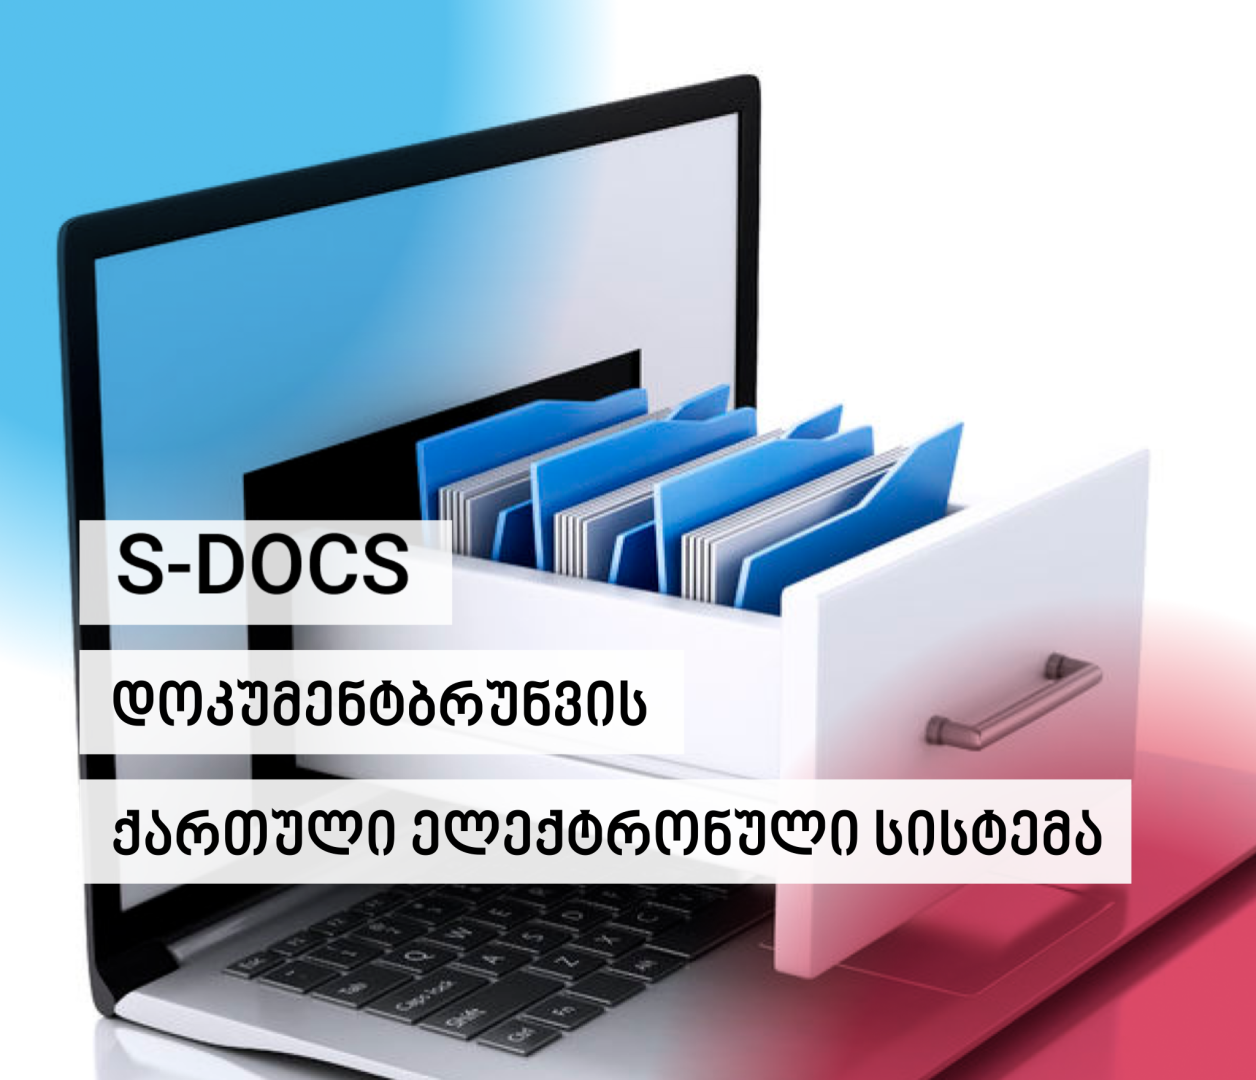 S-DOCS-დოკუმენტბრუნვის ქართული ელექტრონული სისტემა